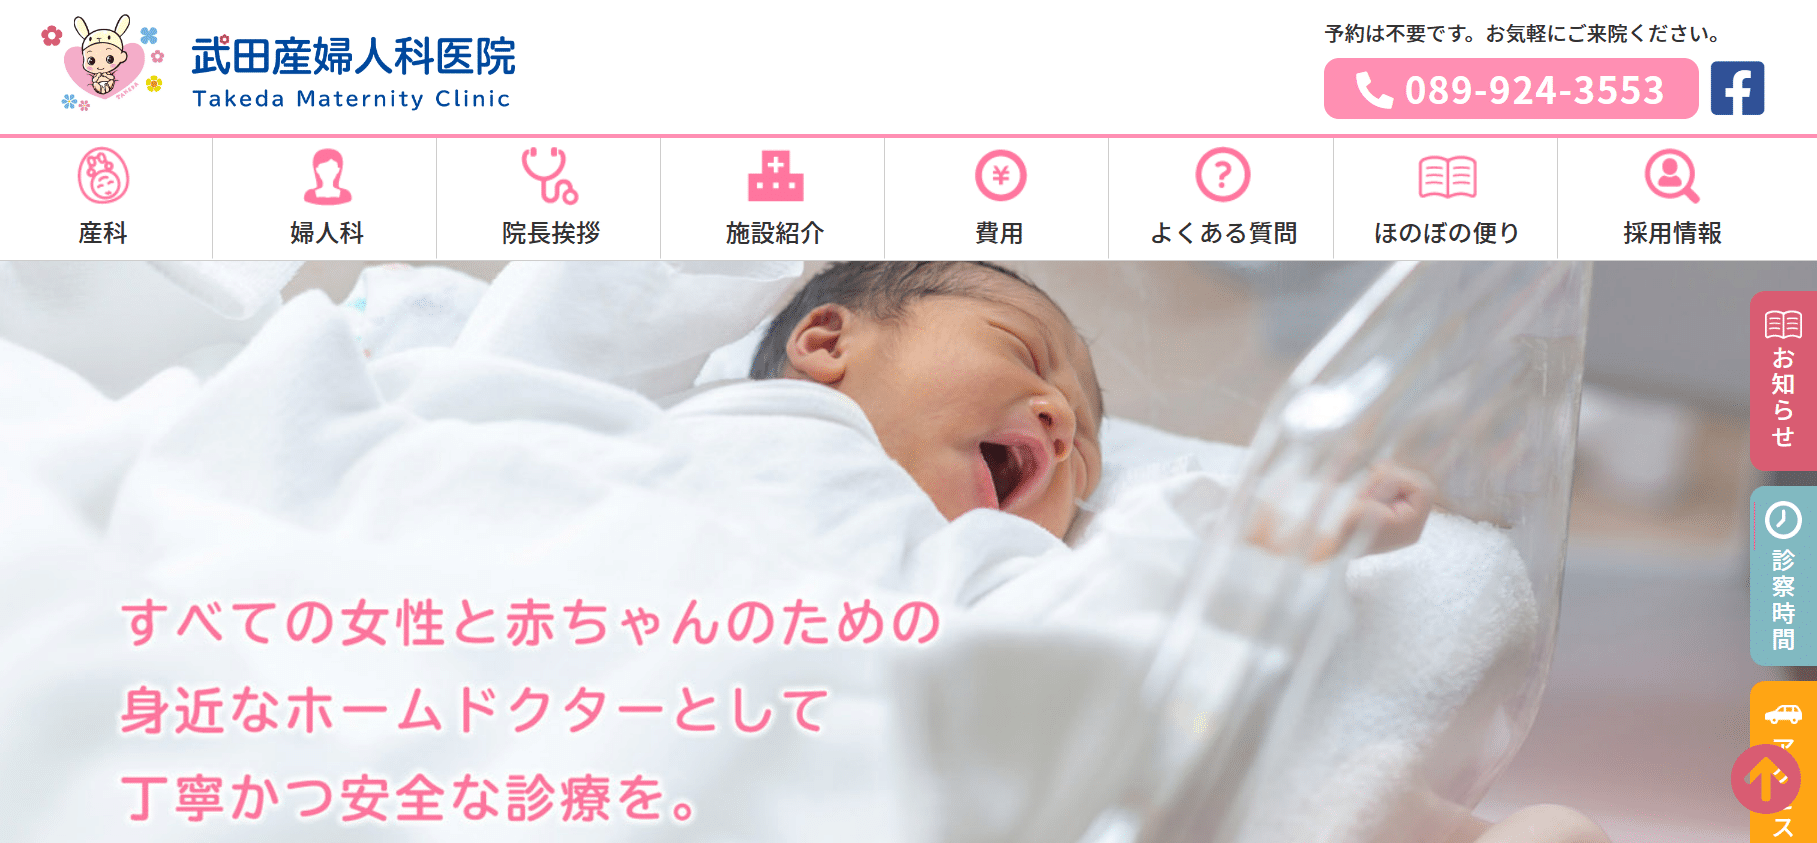 武田産婦人科医院の紹介画像